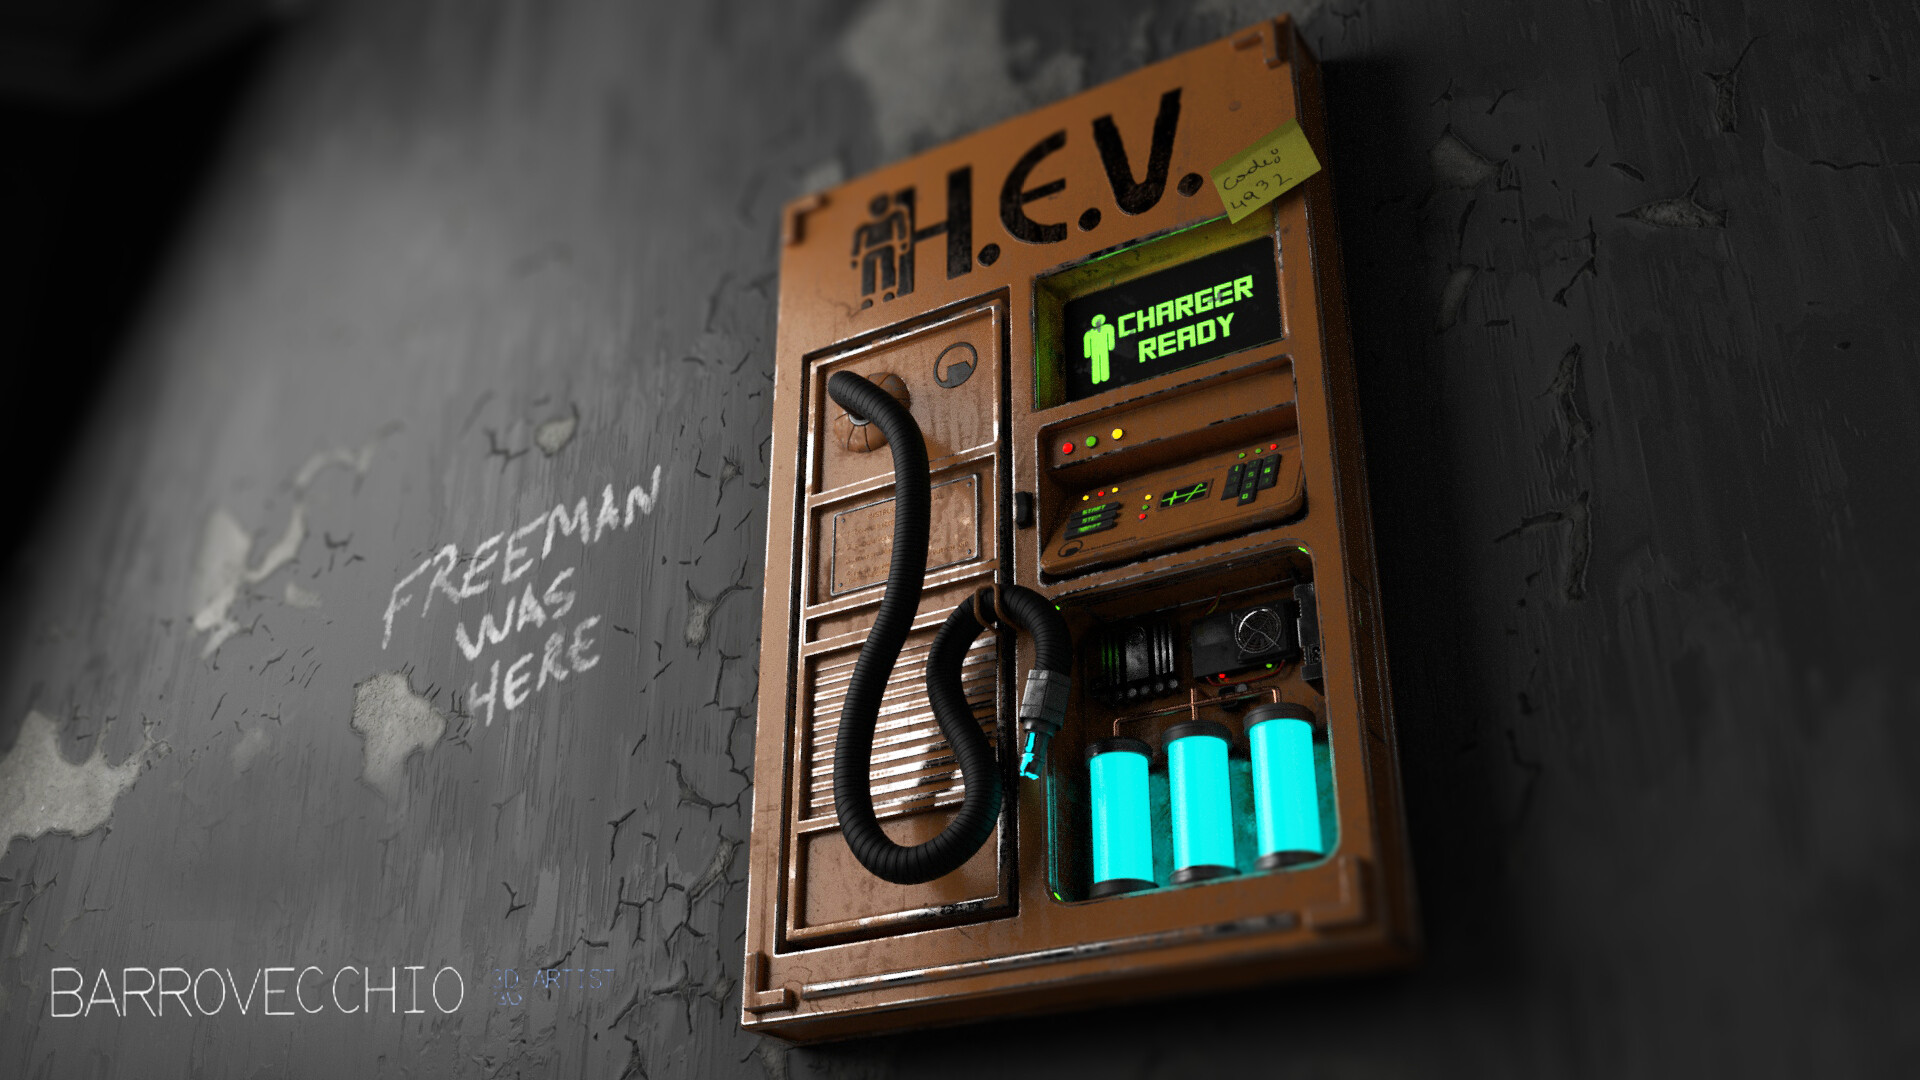 ArtStation - Half-Life HEV suit charger